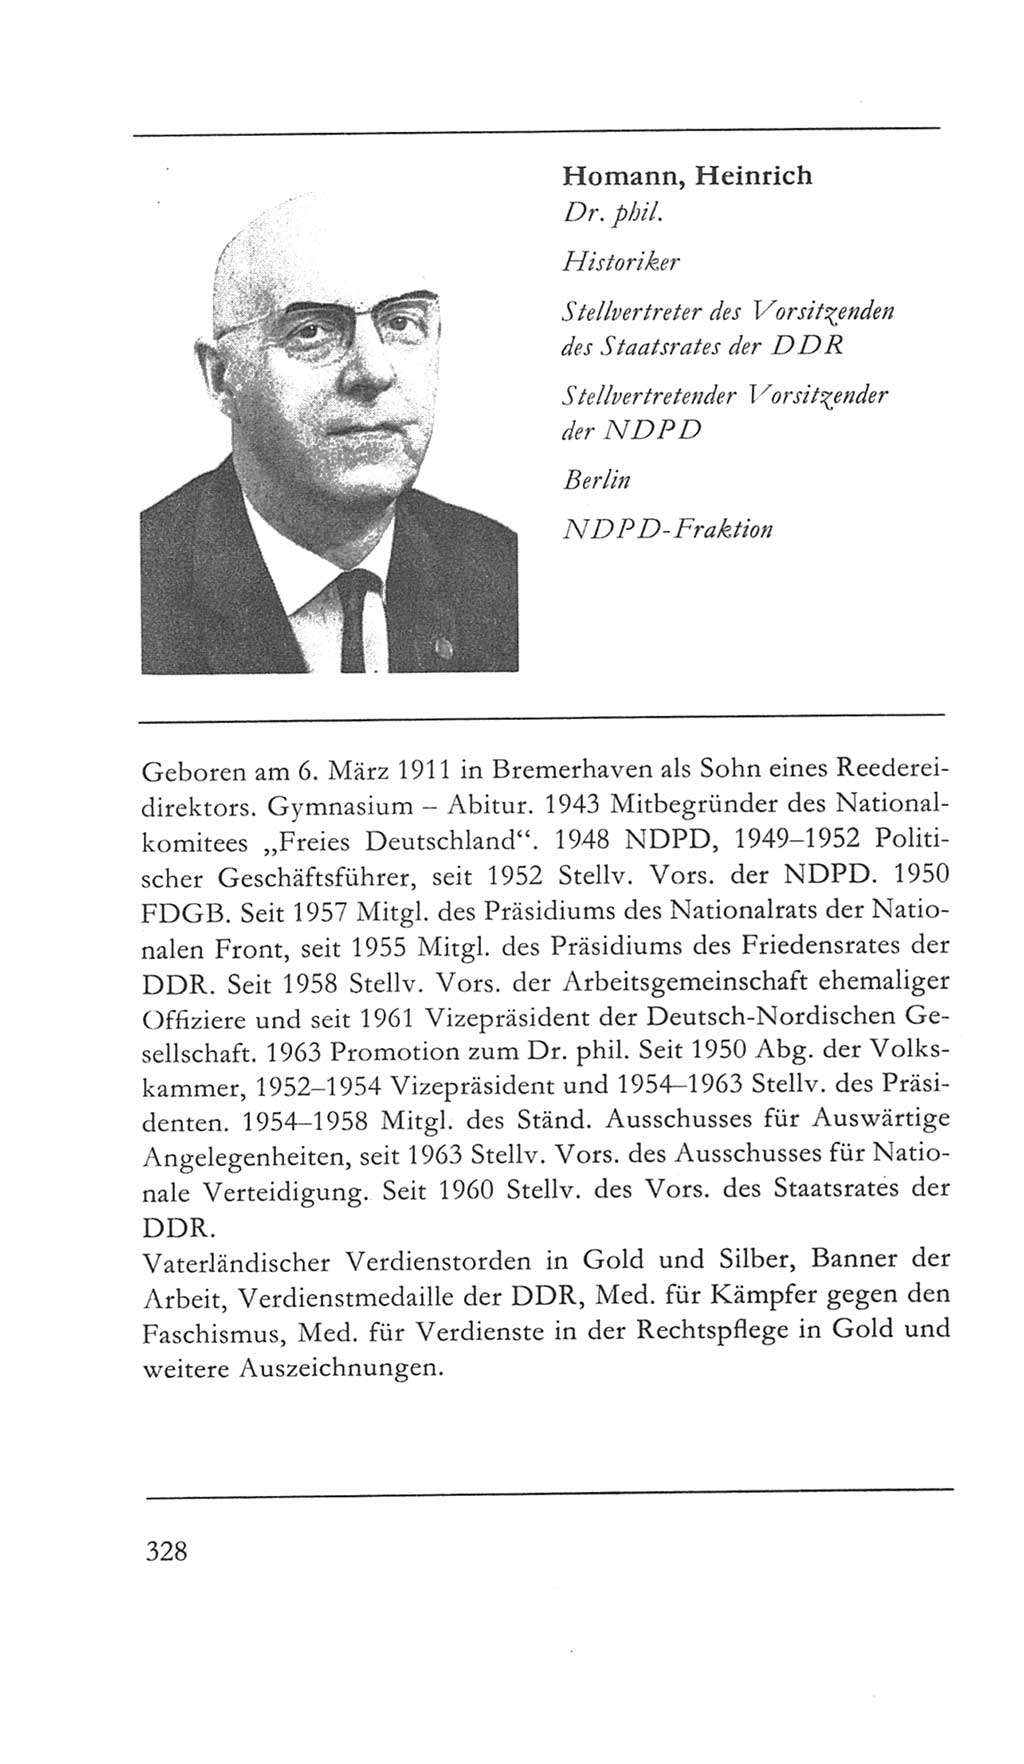 Volkskammer (VK) der Deutschen Demokratischen Republik (DDR) 5. Wahlperiode 1967-1971, Seite 328 (VK. DDR 5. WP. 1967-1971, S. 328)